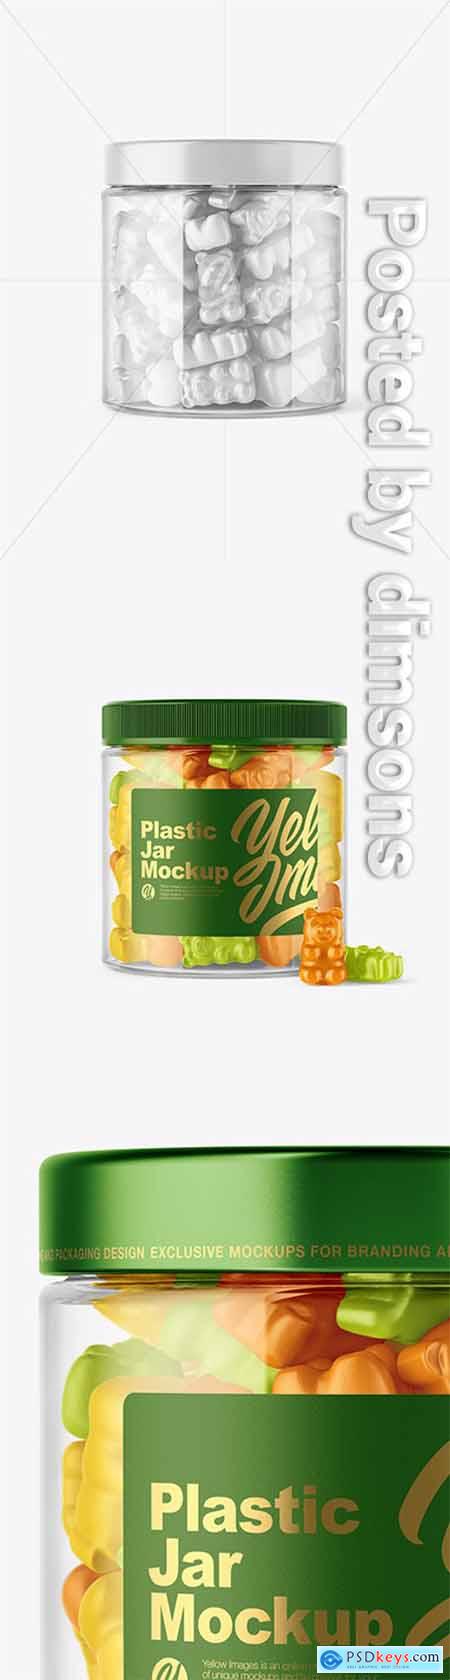 Plastic Jar with Gummies Mockup 44763